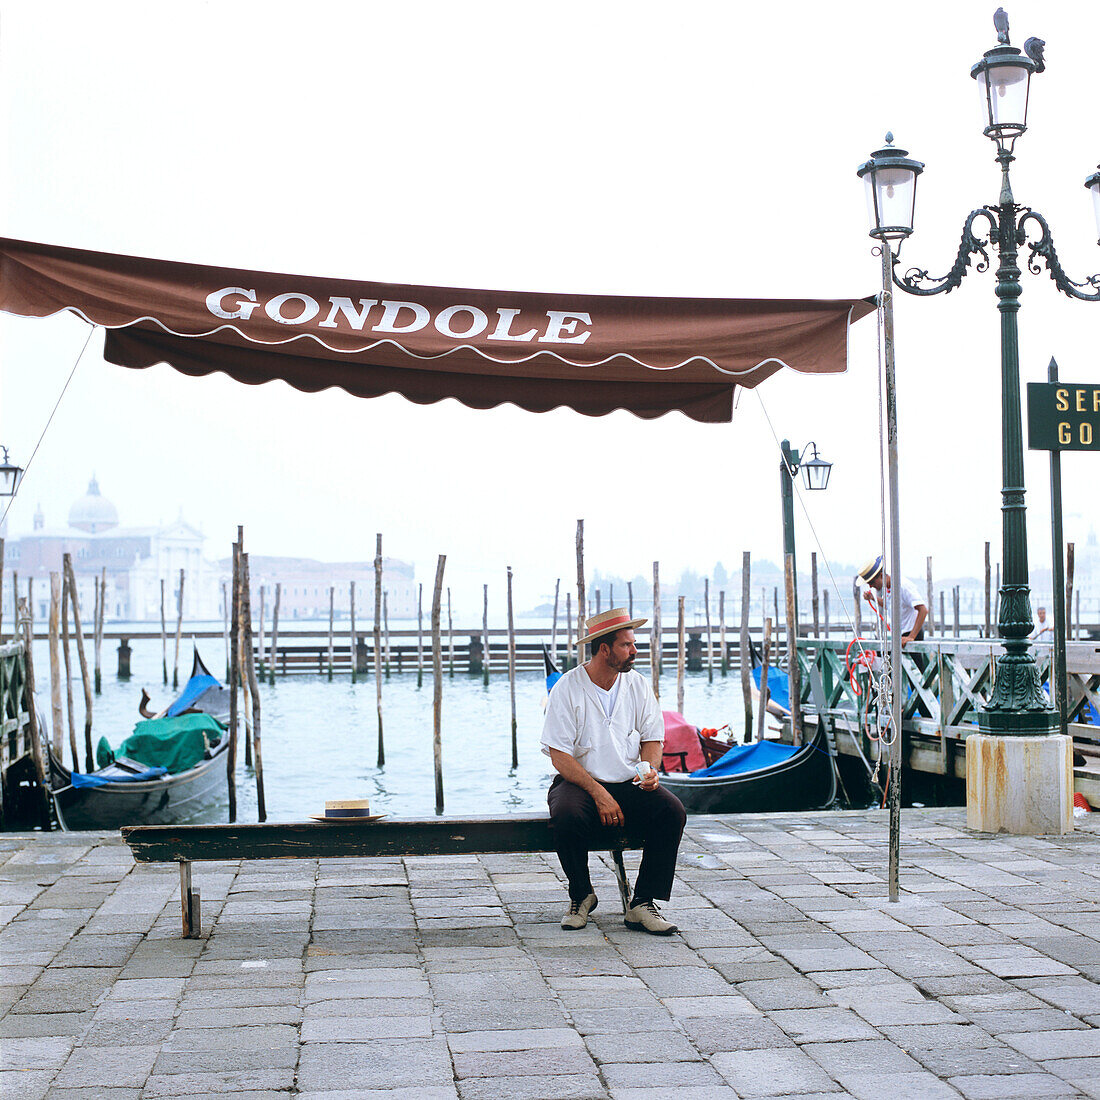 Ein Gondoliere sitzt auf einer Bank, Venedig, Italien